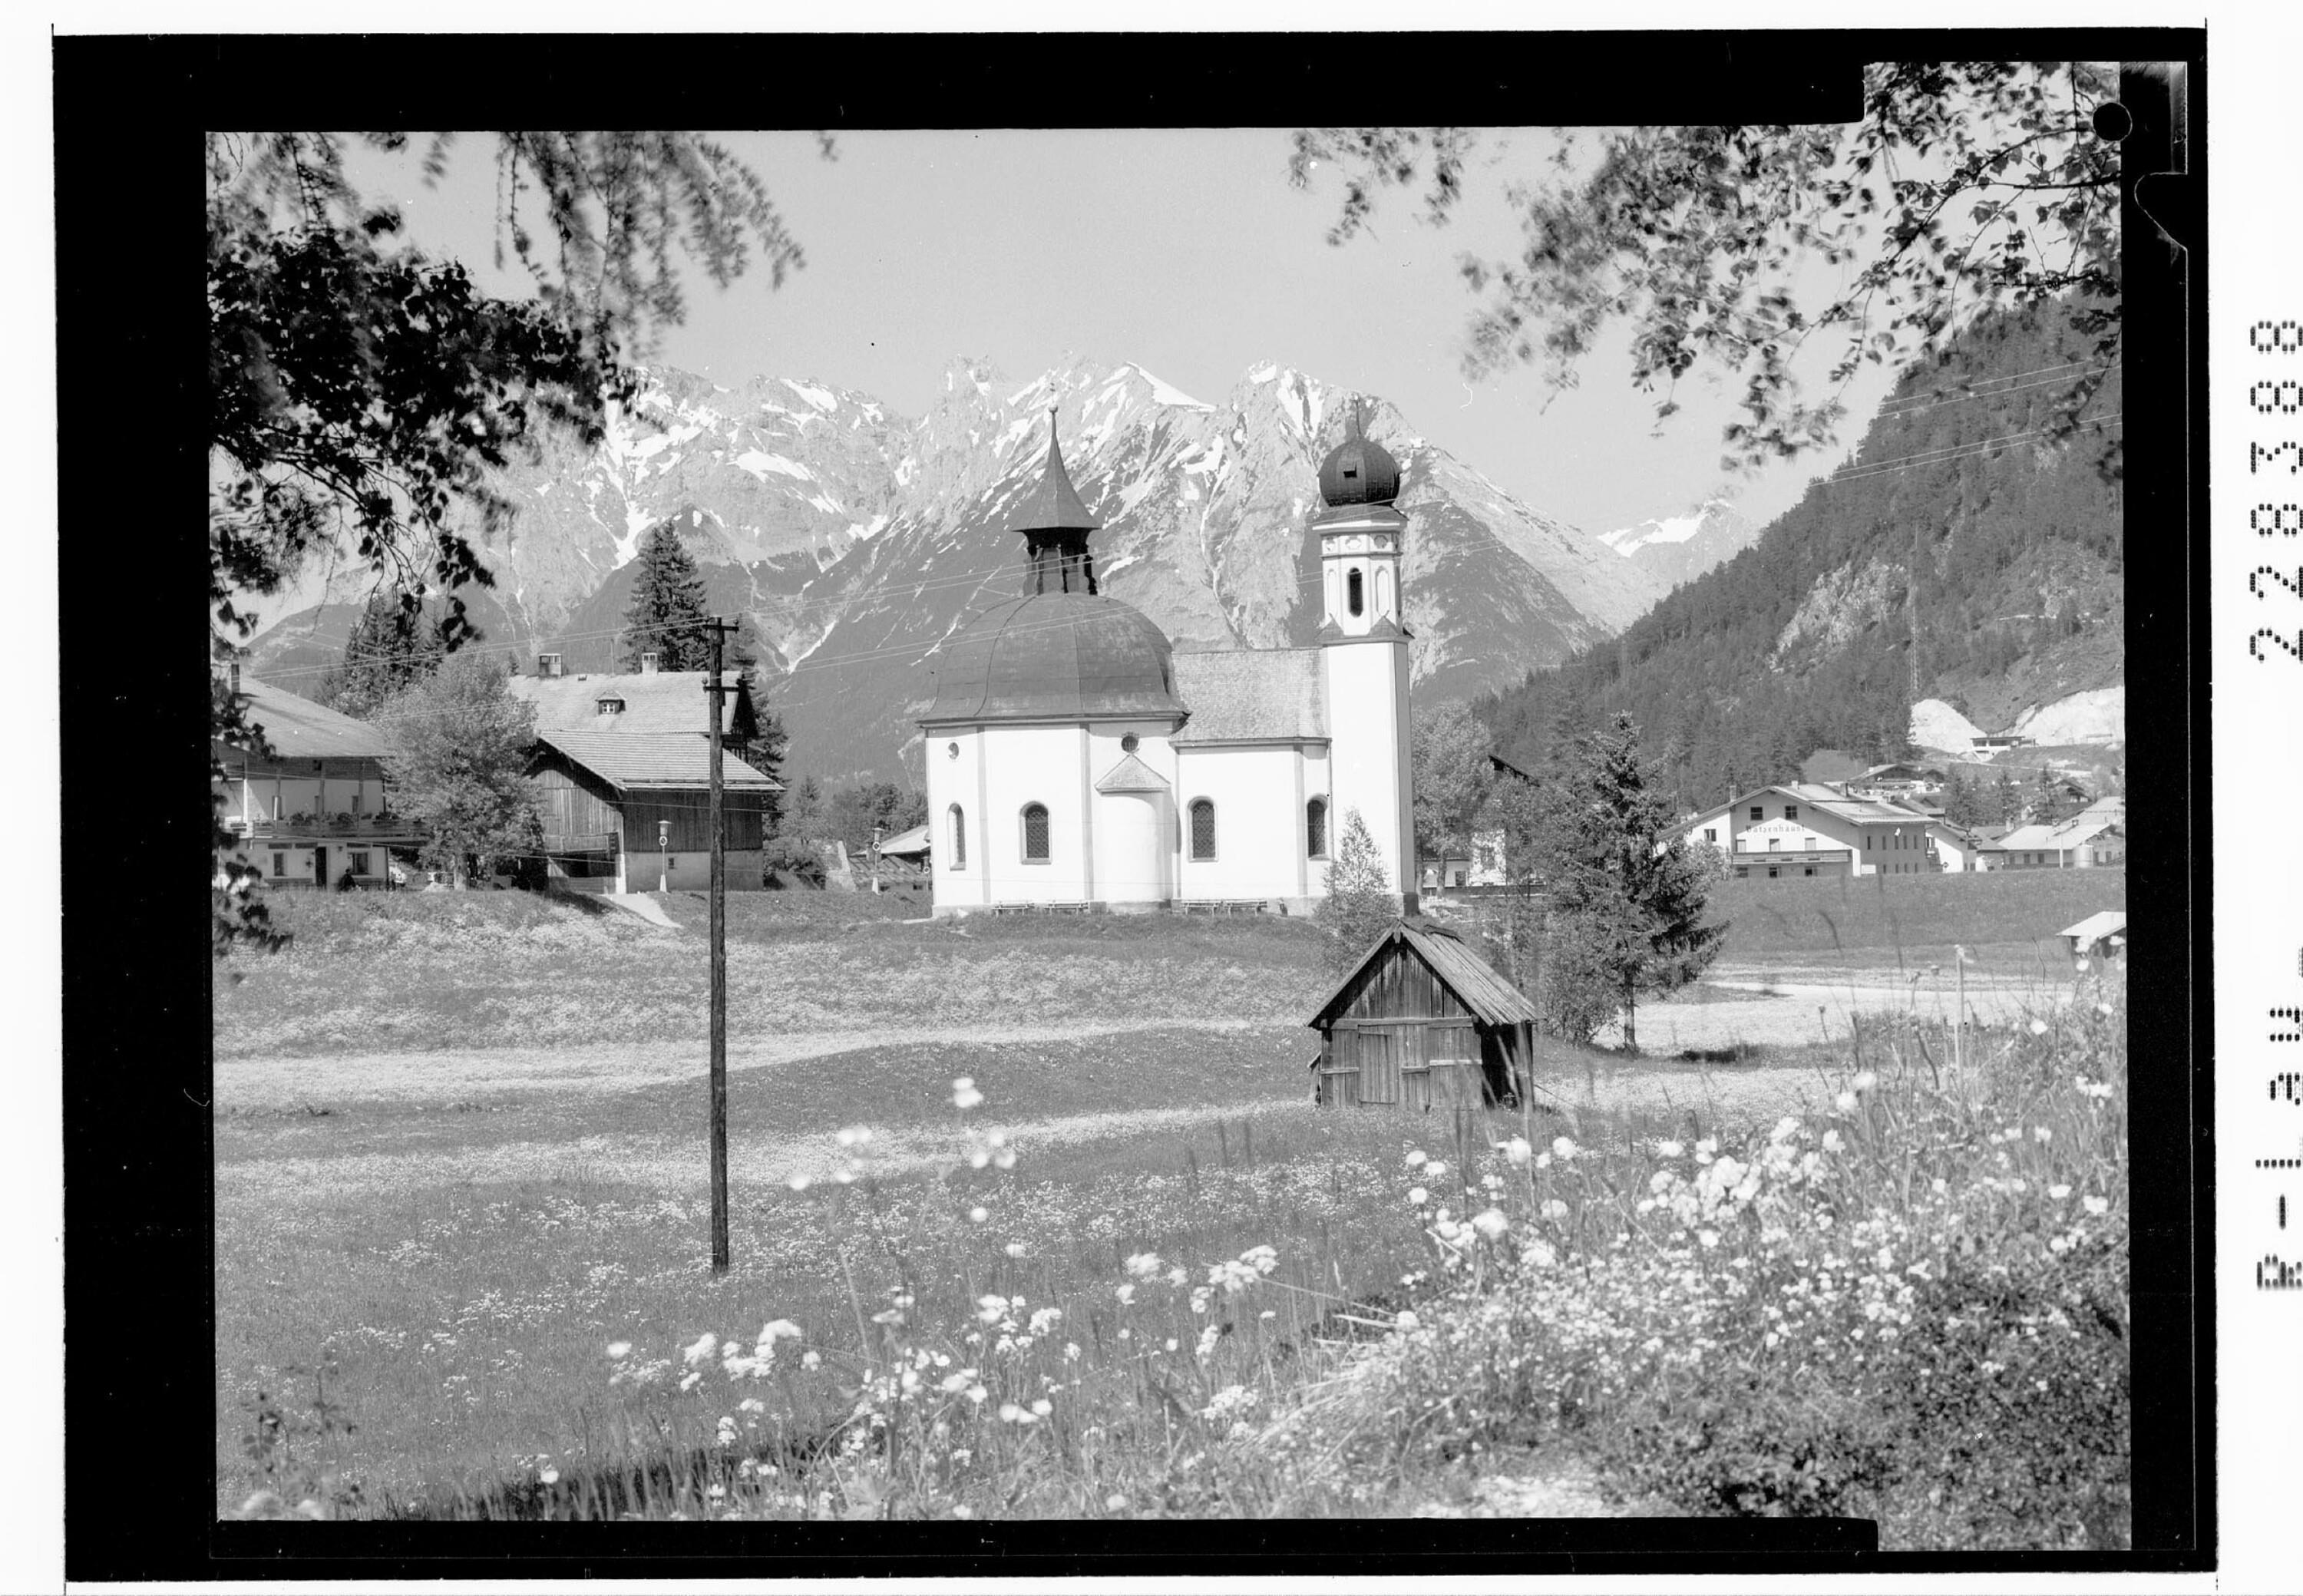 [Seekirchl in Seefeld gegen Nördliche Karwendelkette / Tirol]></div>


    <hr>
    <div class=